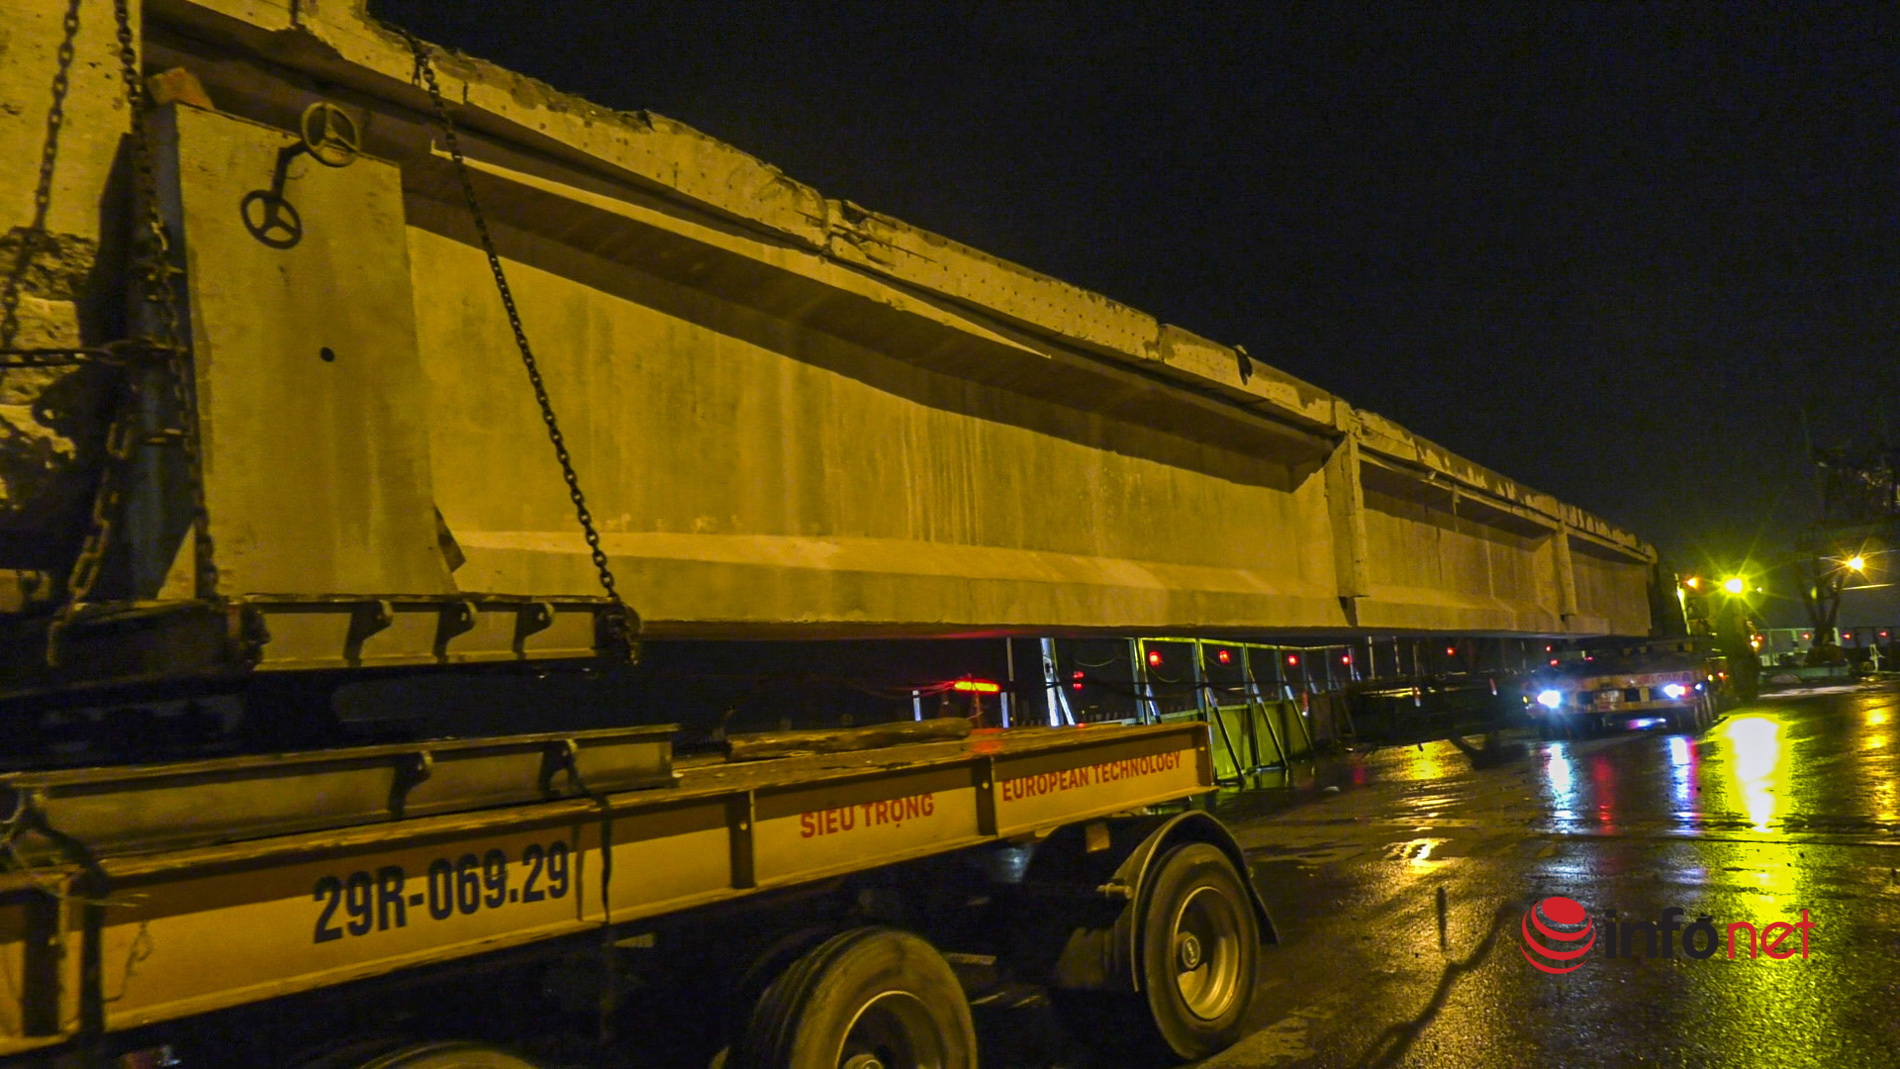 Hà Nội: Xe siêu trọng chuyển dầm cầu Vĩnh Tuy nặng 68 tấn trong đêm, hạn chế người qua lại